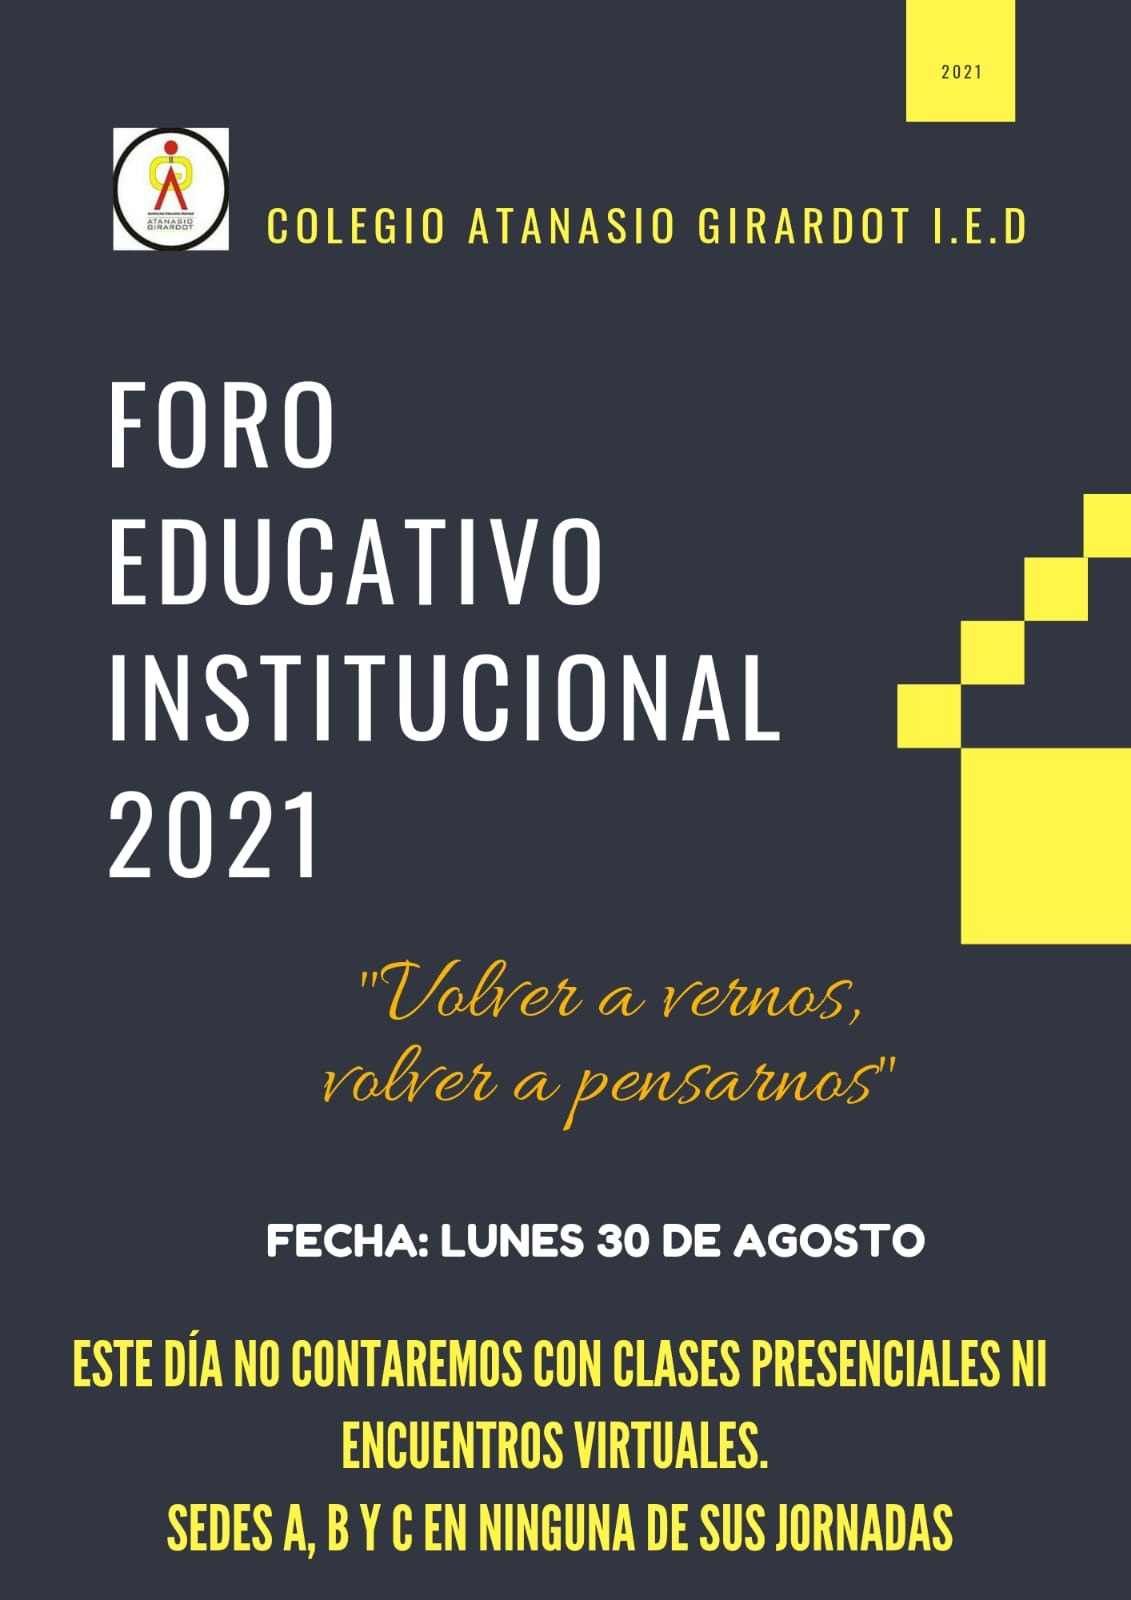 Foro Educativo Institucional 2021 - Imagen 1